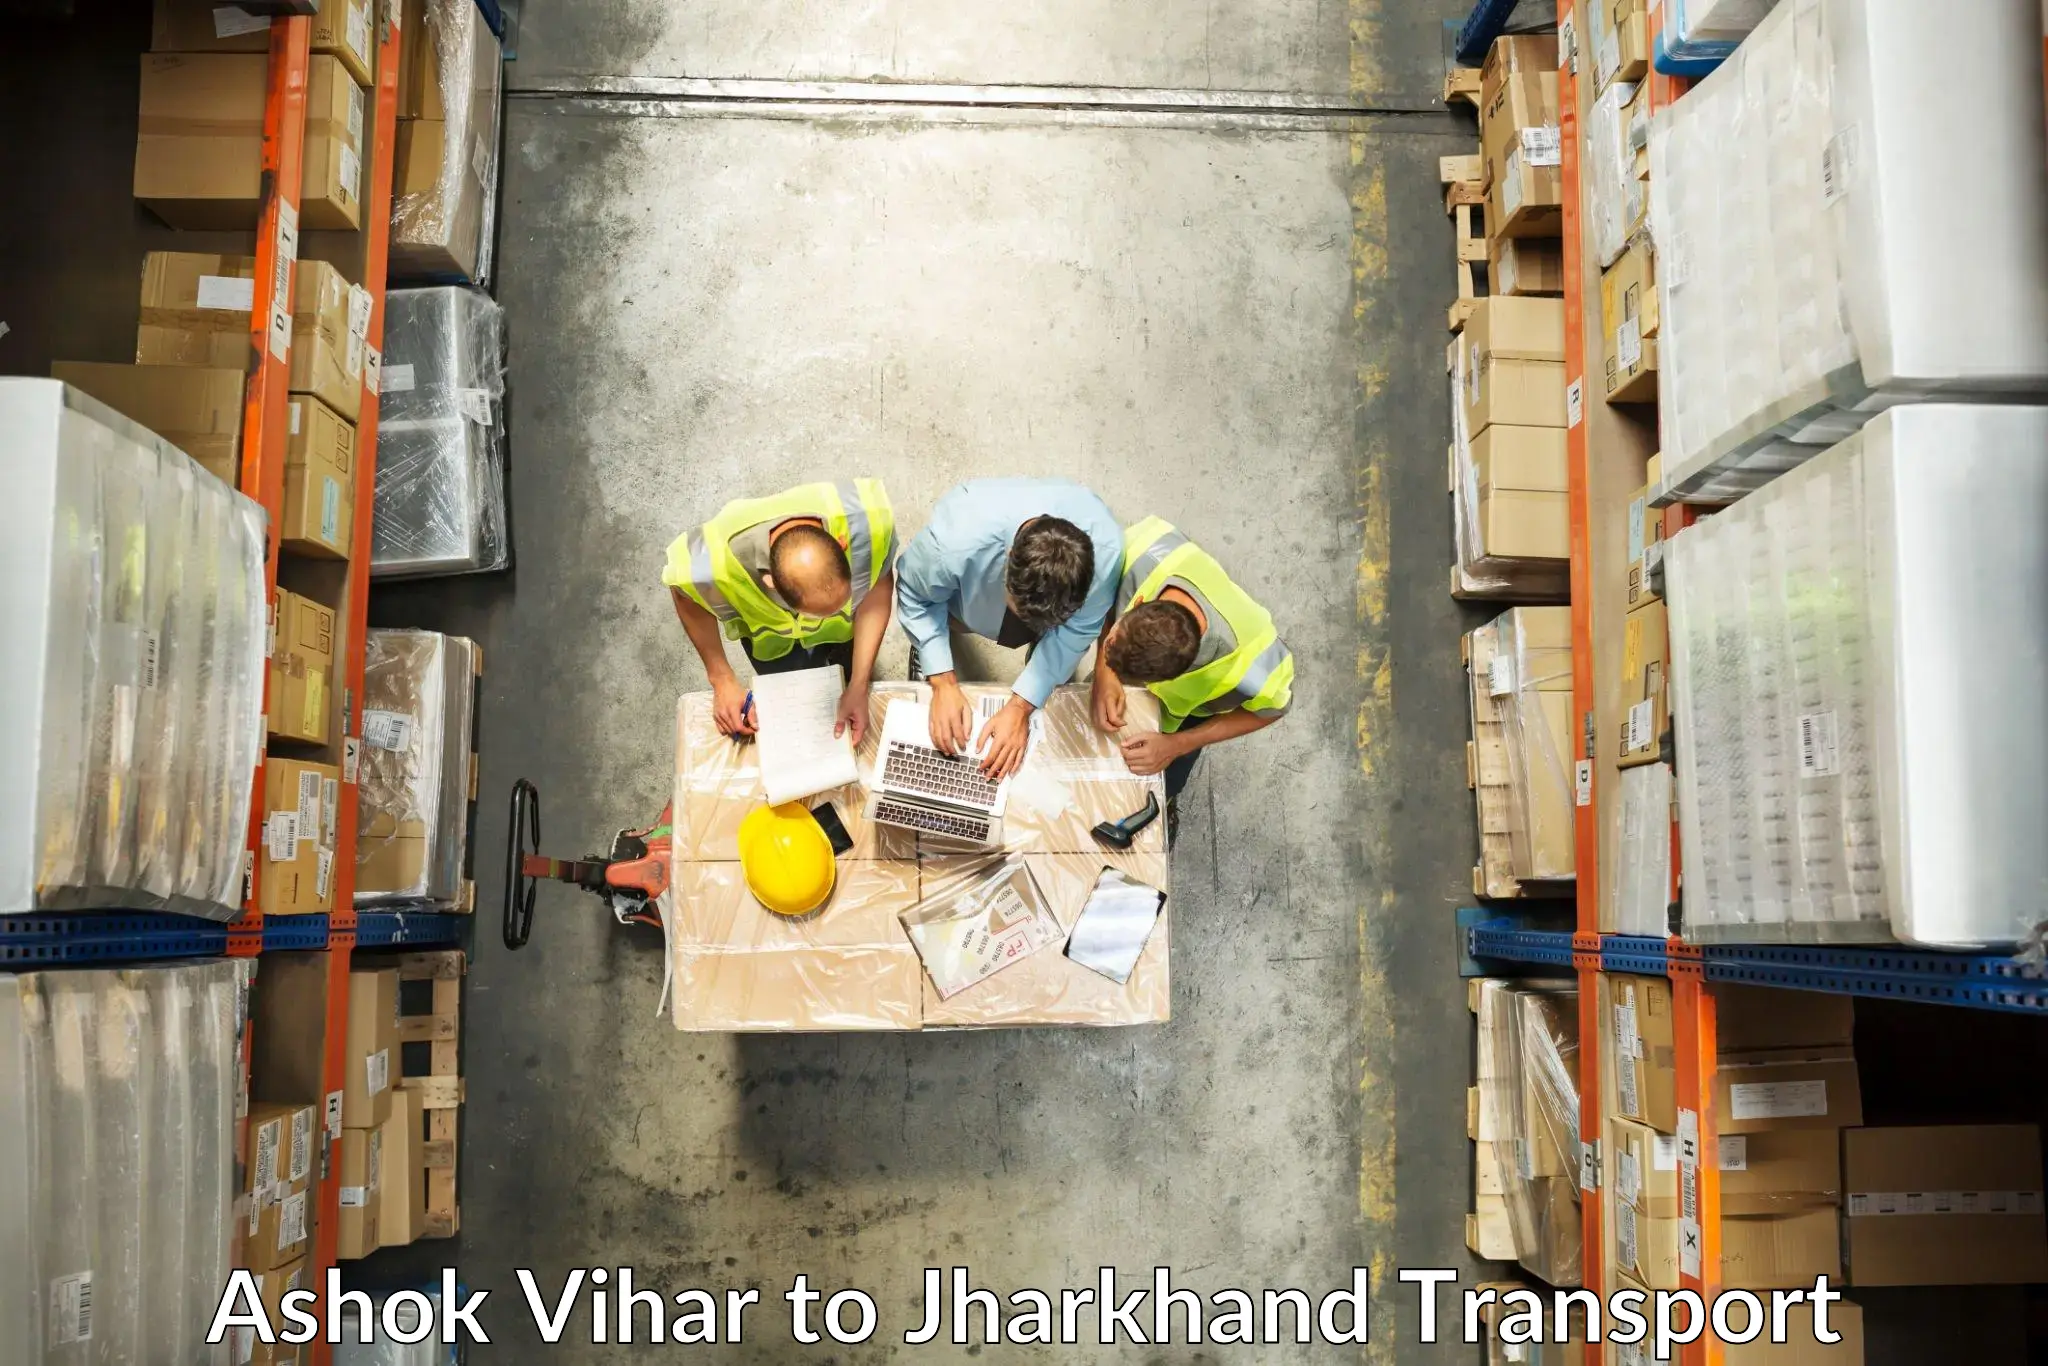 Part load transport service in India Ashok Vihar to Mahagama